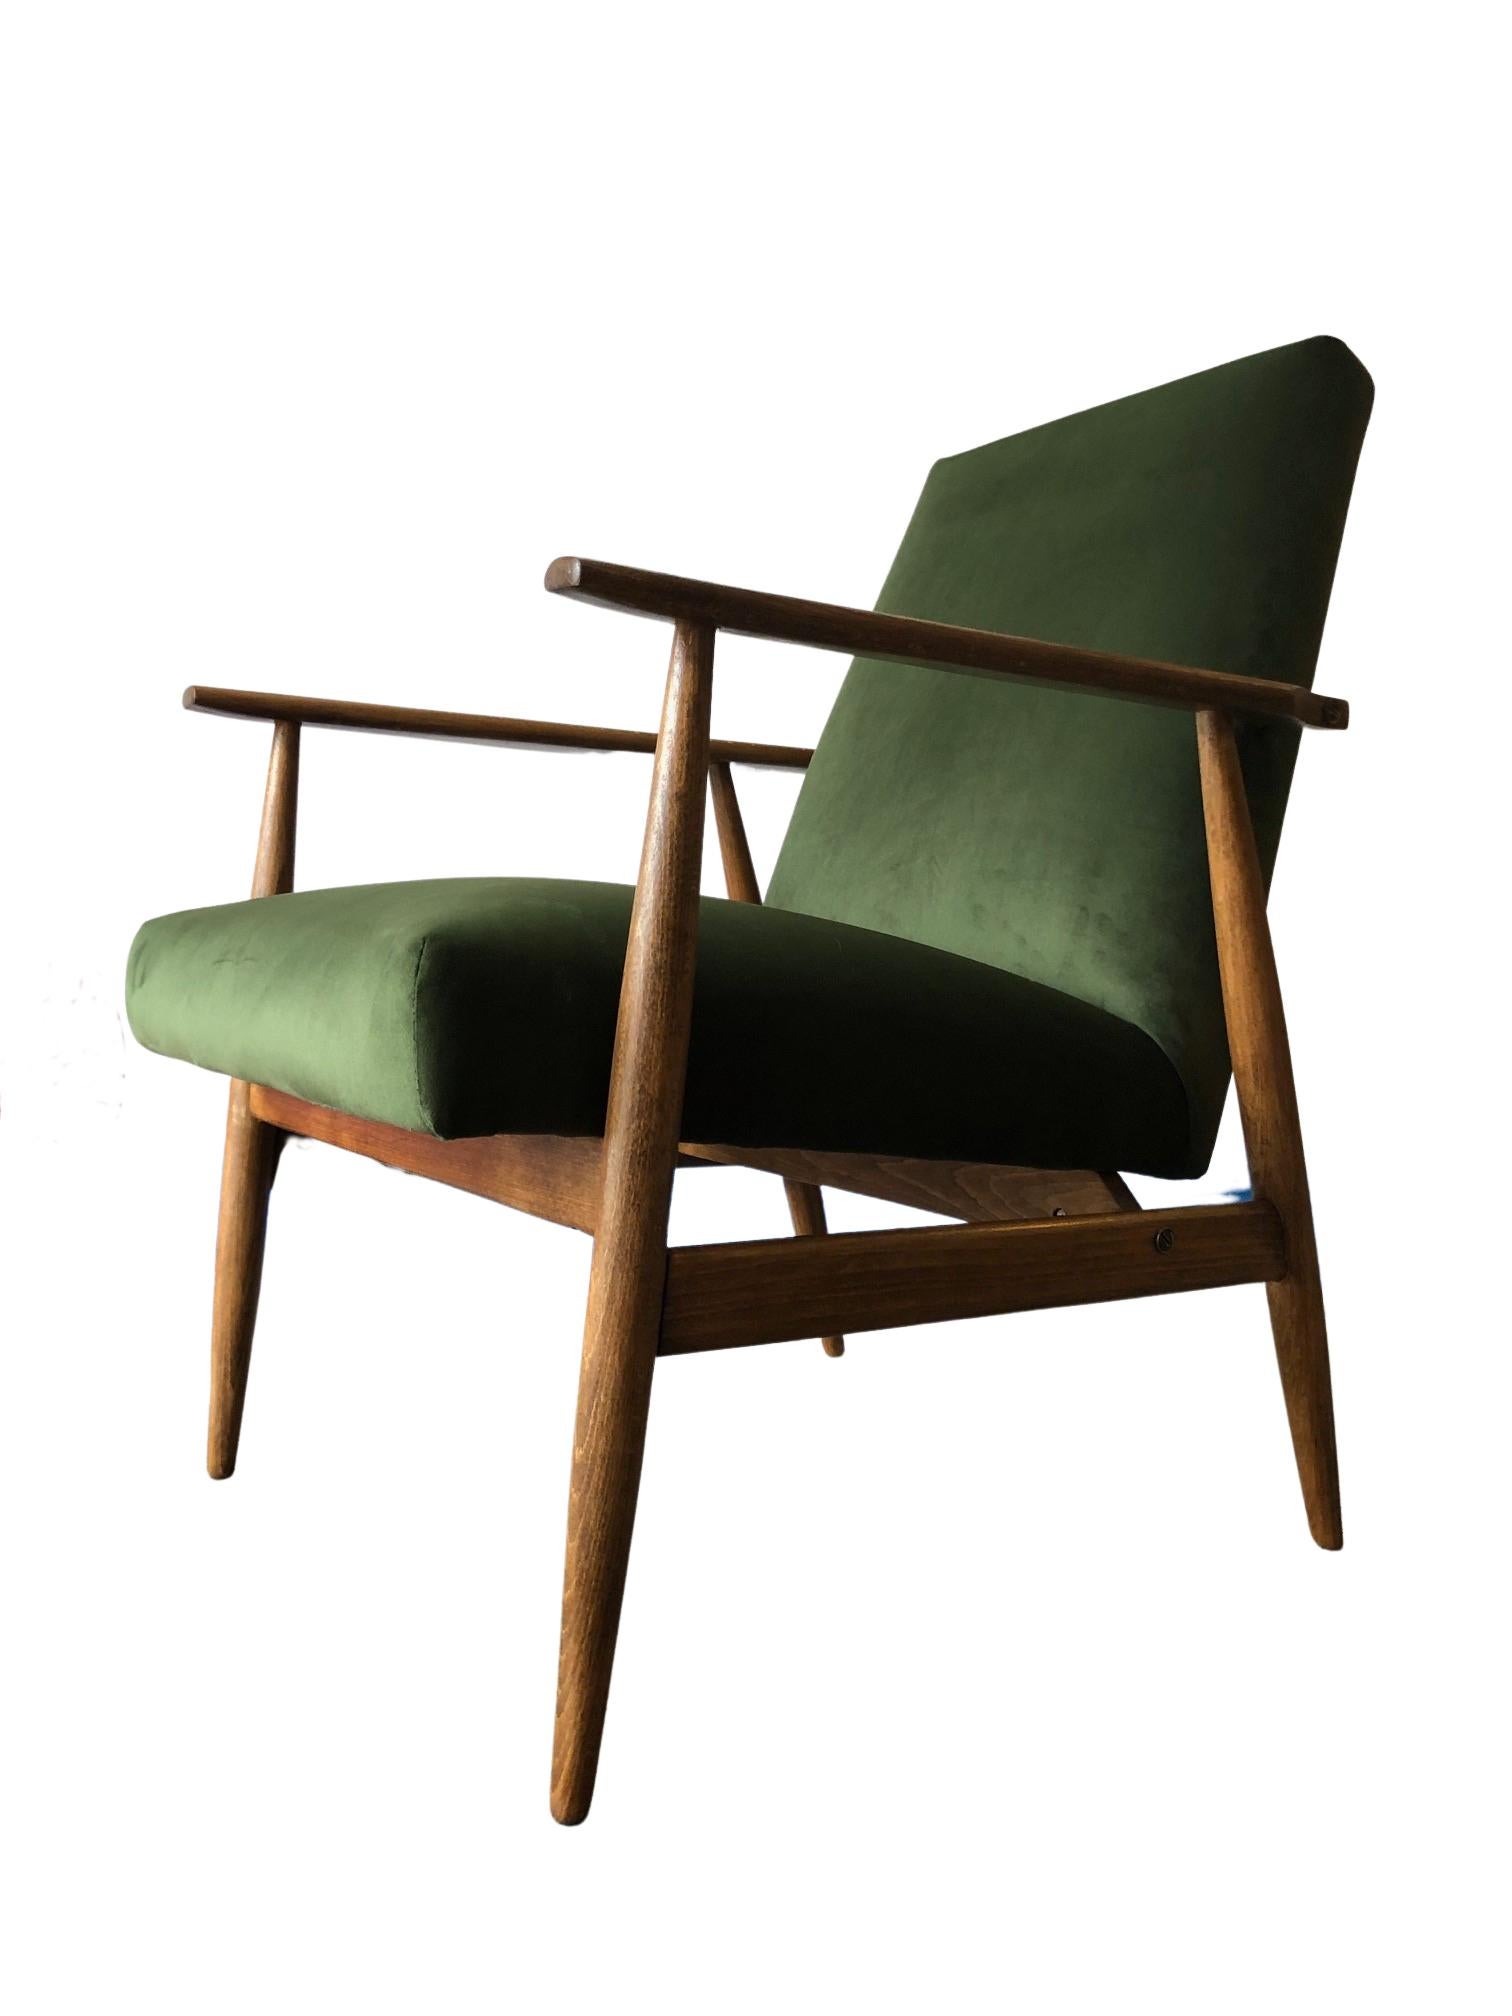 Die Sessel wurden von Henryk Lis entworfen. Die Struktur besteht aus Buchenholz in einer warmen Walnussfarbe, die mit einem seidenmatten Lack überzogen ist. Die Polsterung ist aus hochwertigem Samt in einer schönen grünen Farbe. Die Garnitur wurde